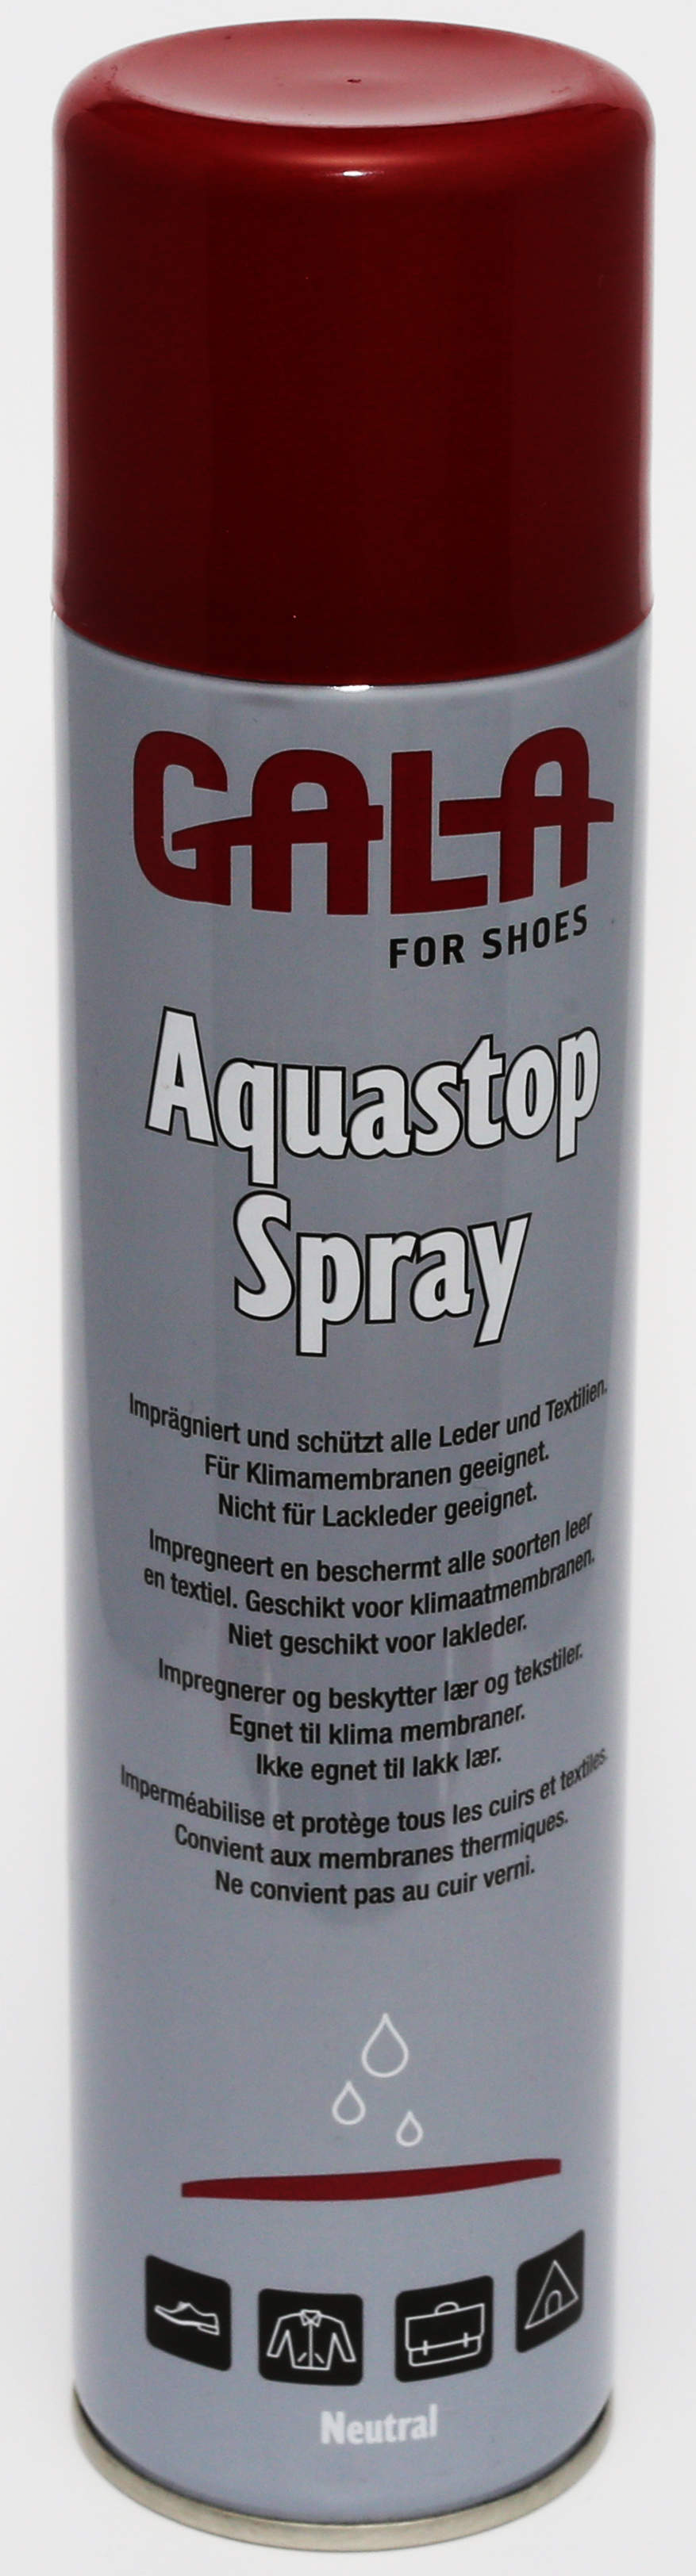 Gala Aquastop Spray